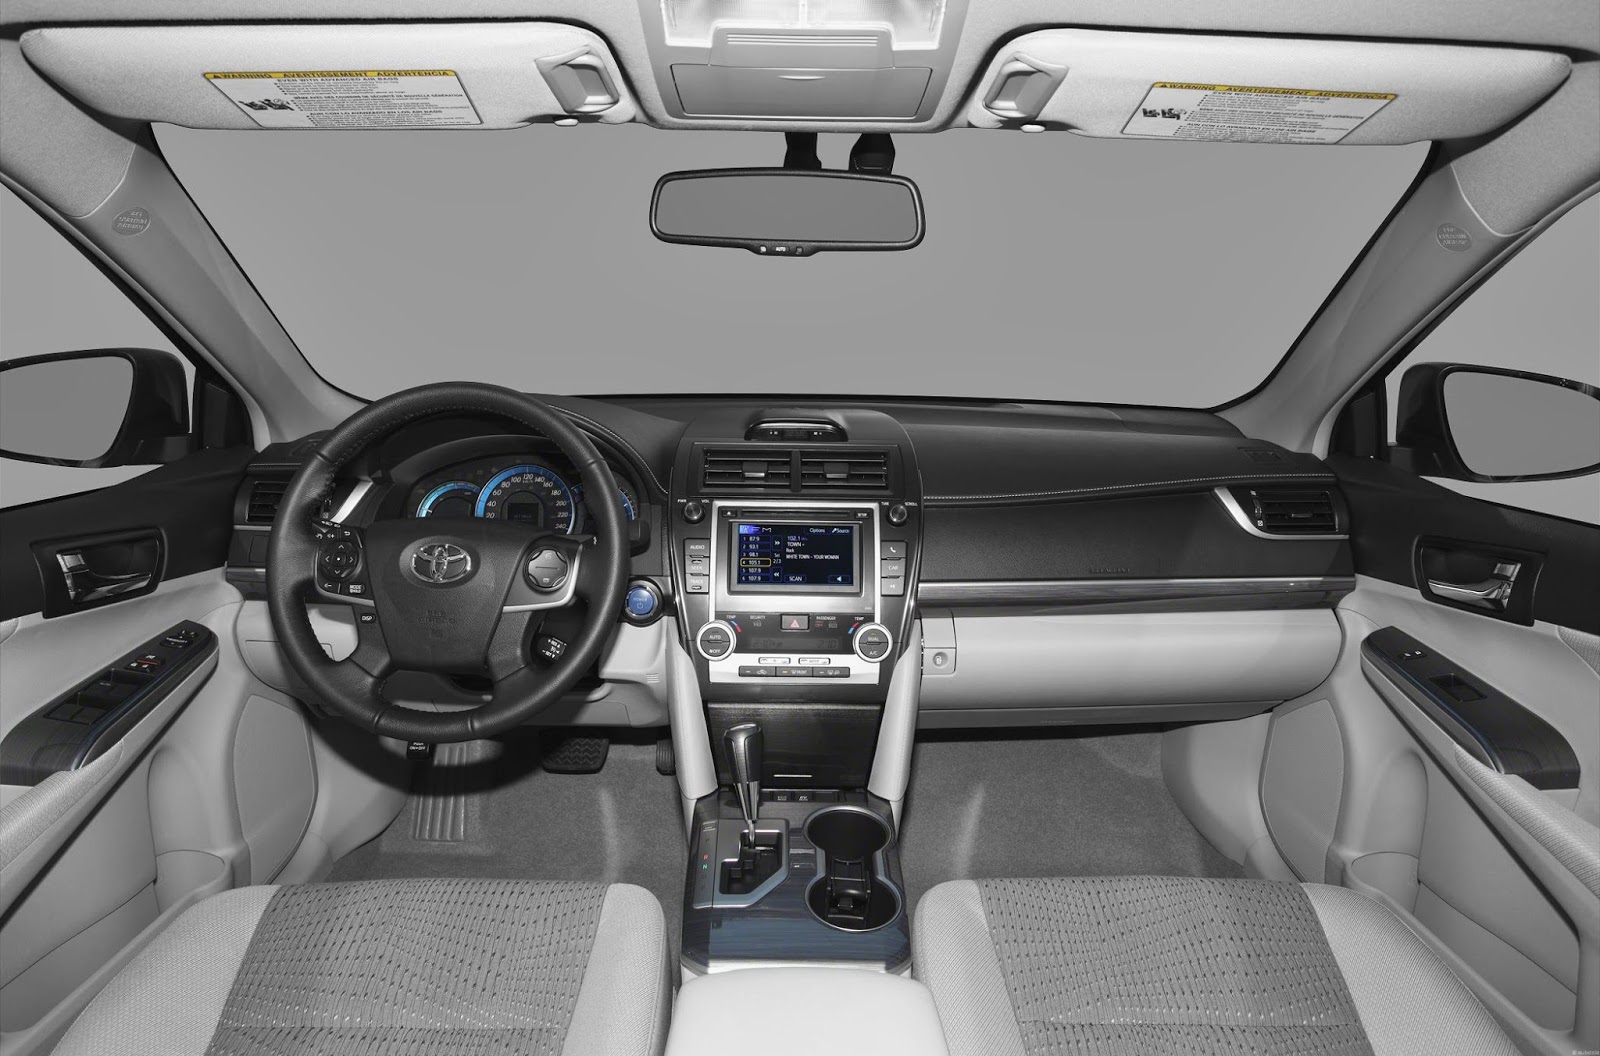 Fuel Economy: Toyota Camry 2014 Specs and Fuel Economy